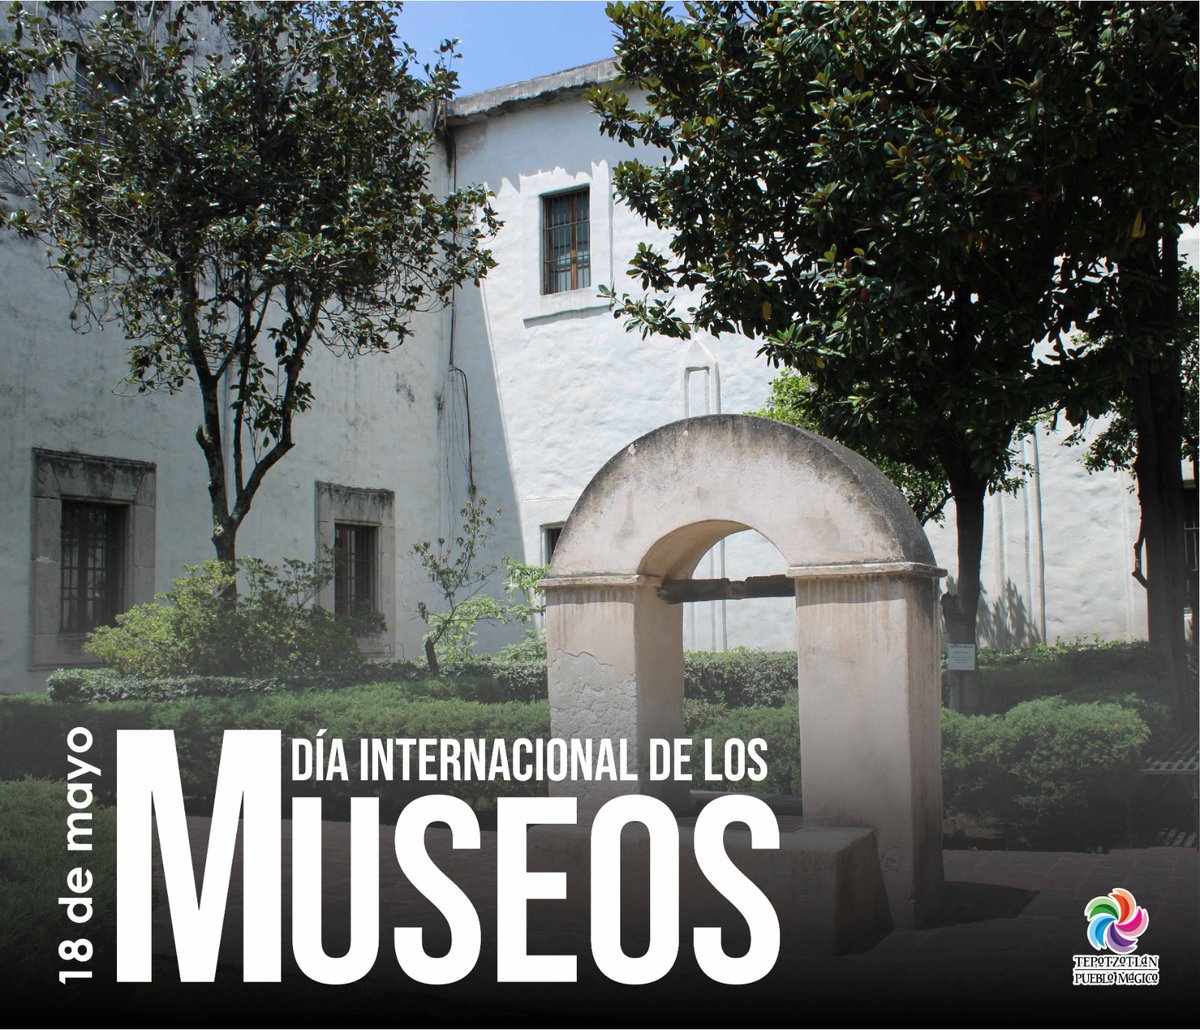 Este 1️⃣8️⃣de mayo 🏛️Día Internacional de los Museos🏛️, te invitamos a visitar el Museo Nacional del Virreinato, donde podrás disfrutar de su bella arquitectura, sus distintas salas y de su temporada de coros que🎻🎼🖼️ #PuebloMágico #Tepotzotlán #DíaMunidalDeLosMuseos